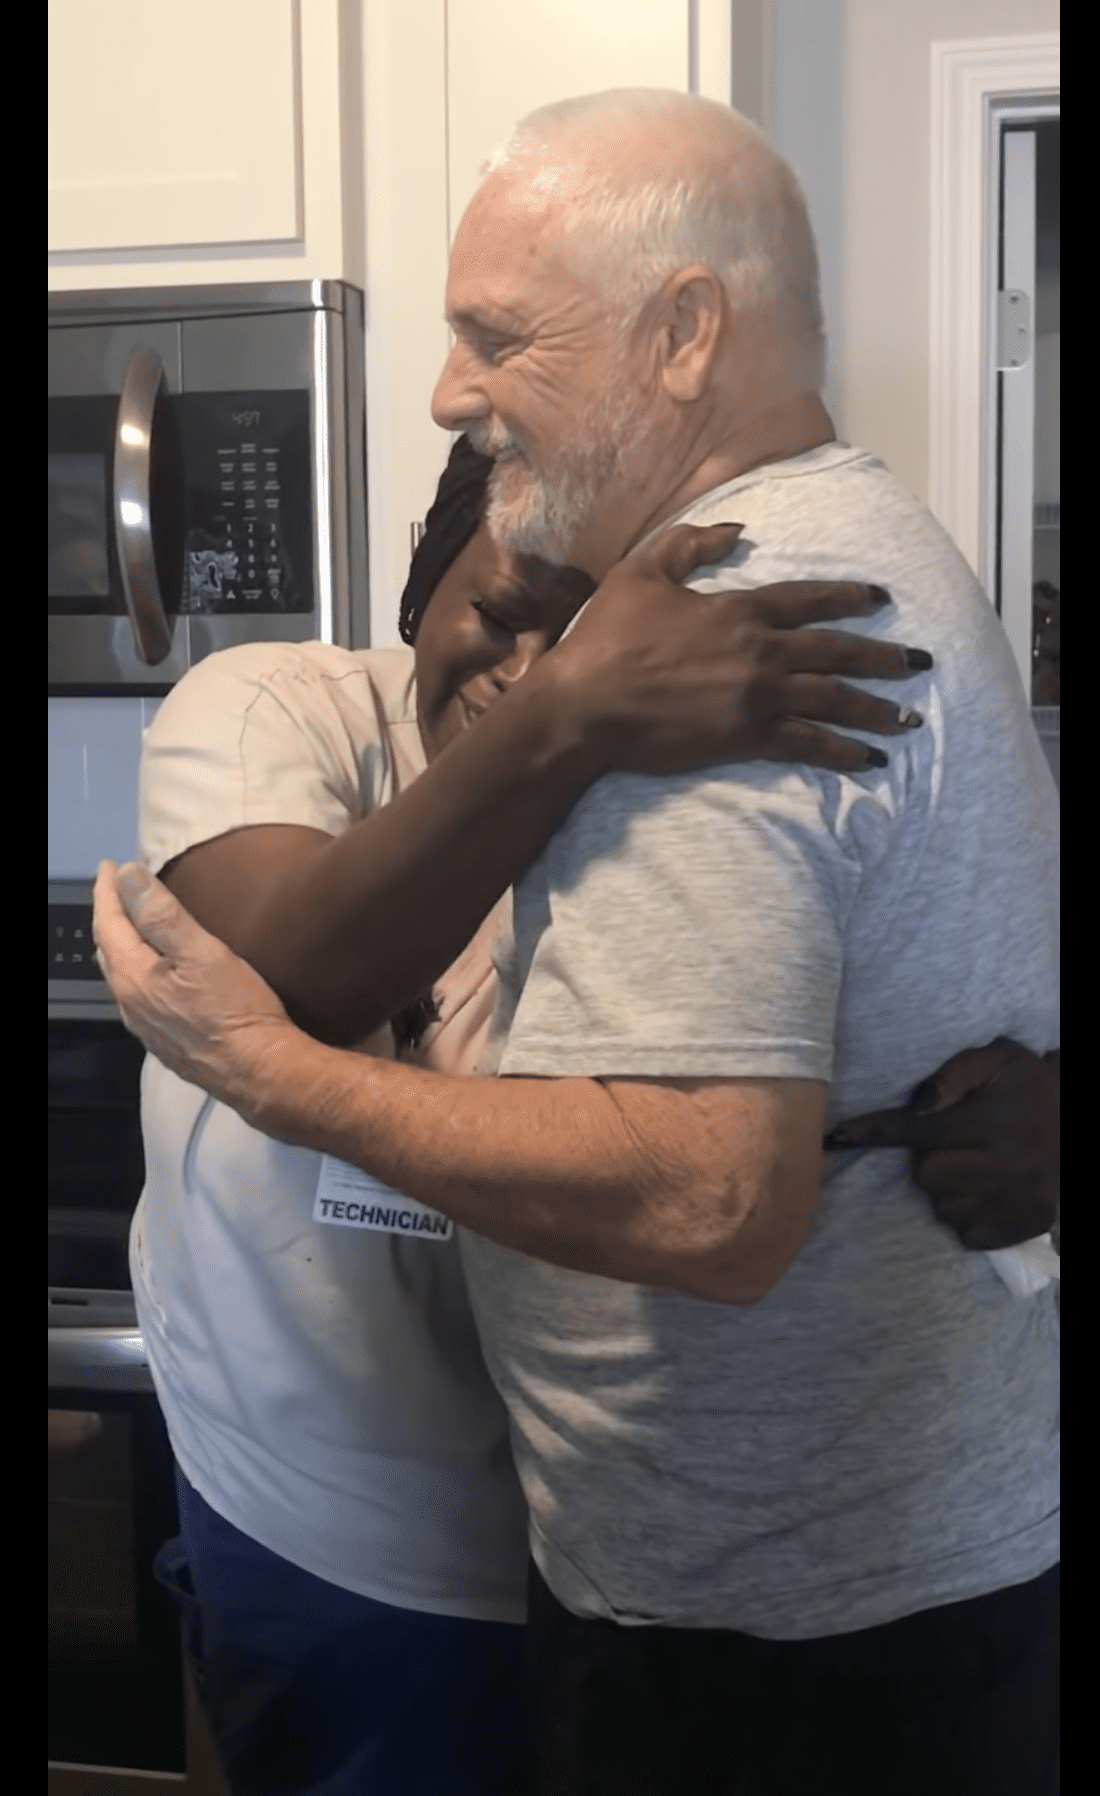 TunDe erhält eine tröstende Umarmung von Chris Wrights Vater. | Quelle: YouTube.com/Carmen Wright